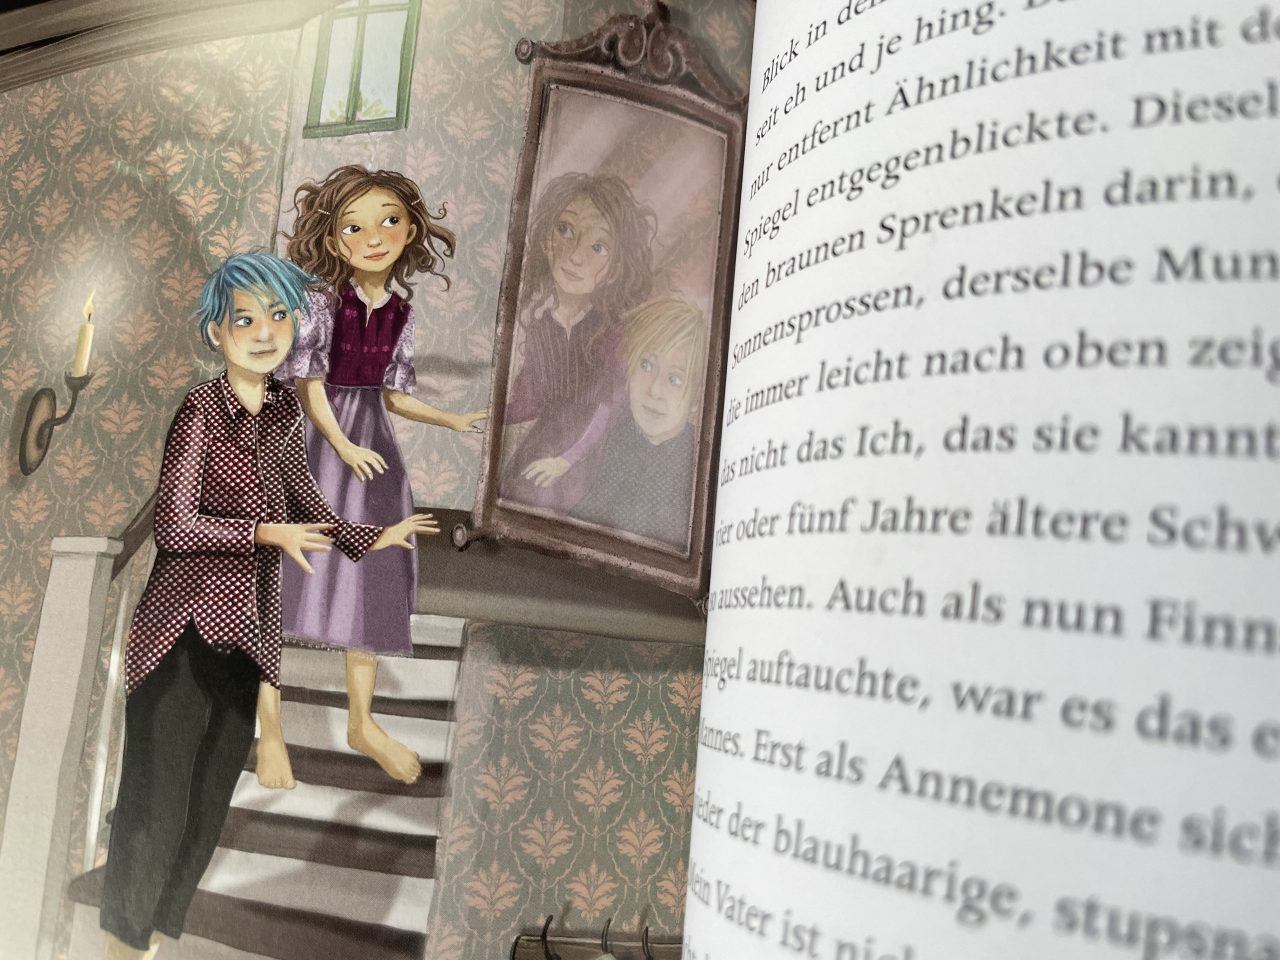 aufgeklapptes Kinderbuch "Annemone Apfelstroh" - links eine Illustration mit zwei Kindern auf einer Treppe, die in einen Spiegel sehen - rechts Text